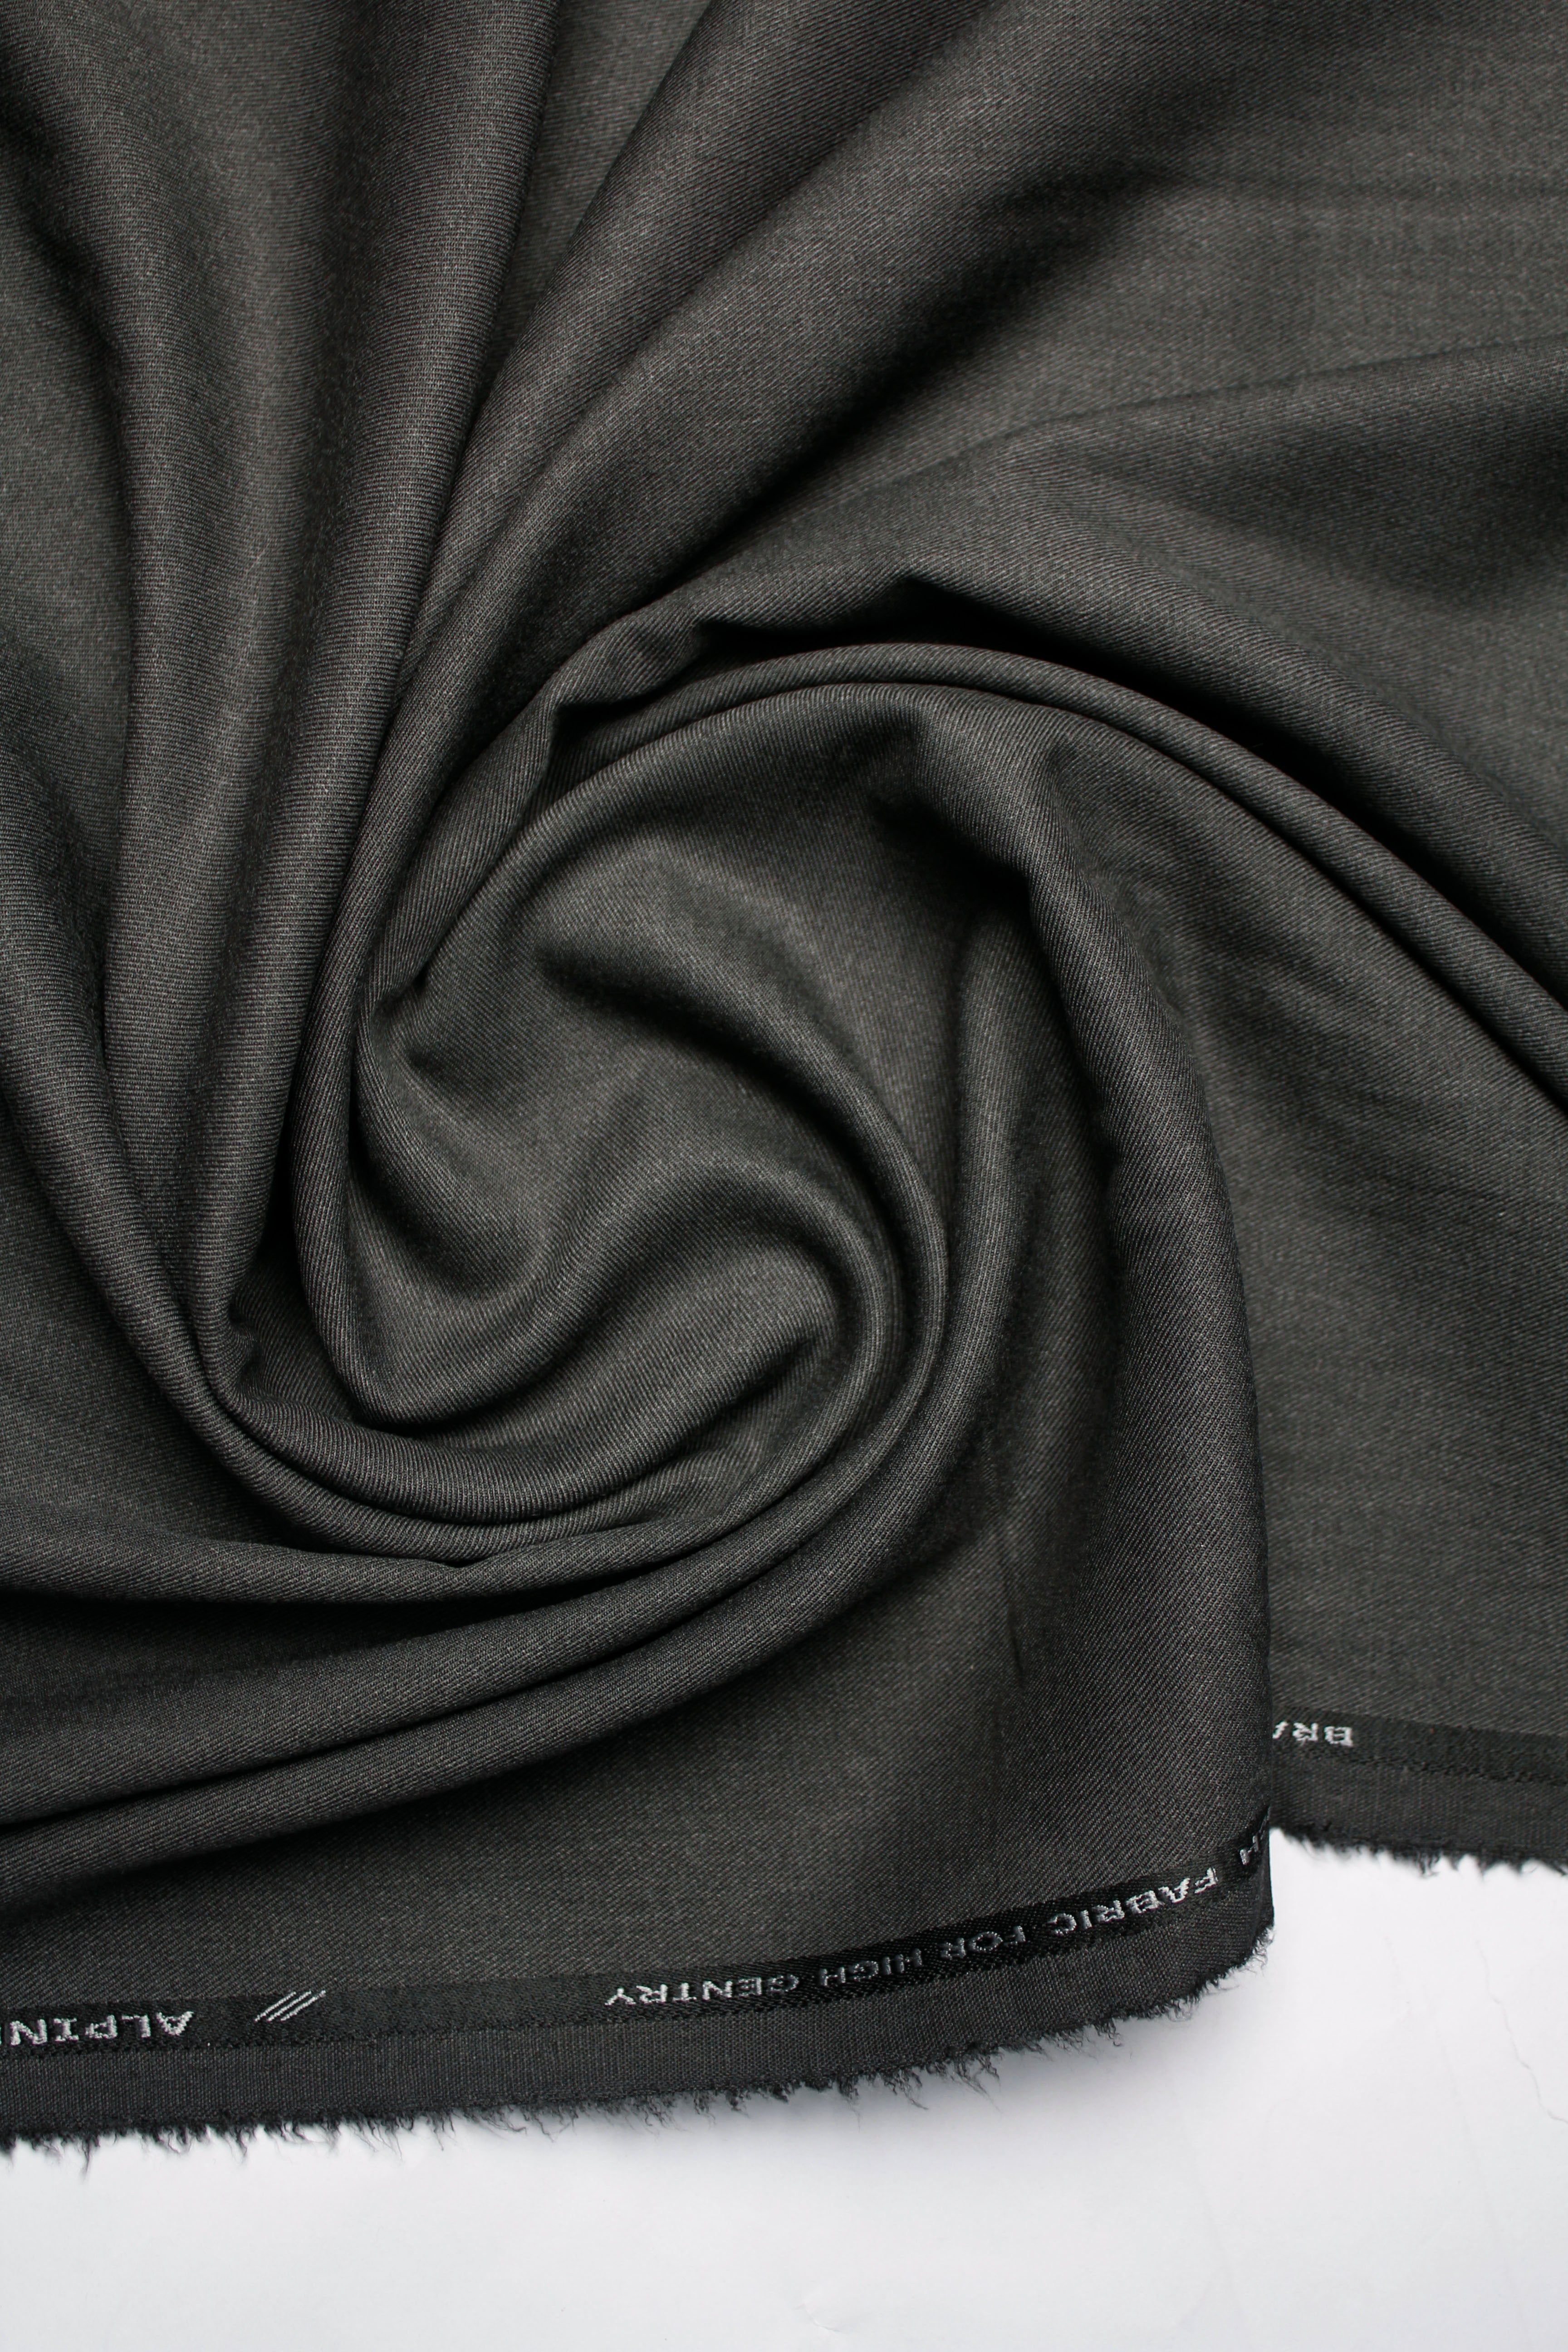 J.Hampstead Men's Cotton Structured Unstitched Trouser Fabric (Green) |  Fabric, Green fabric, Trousers